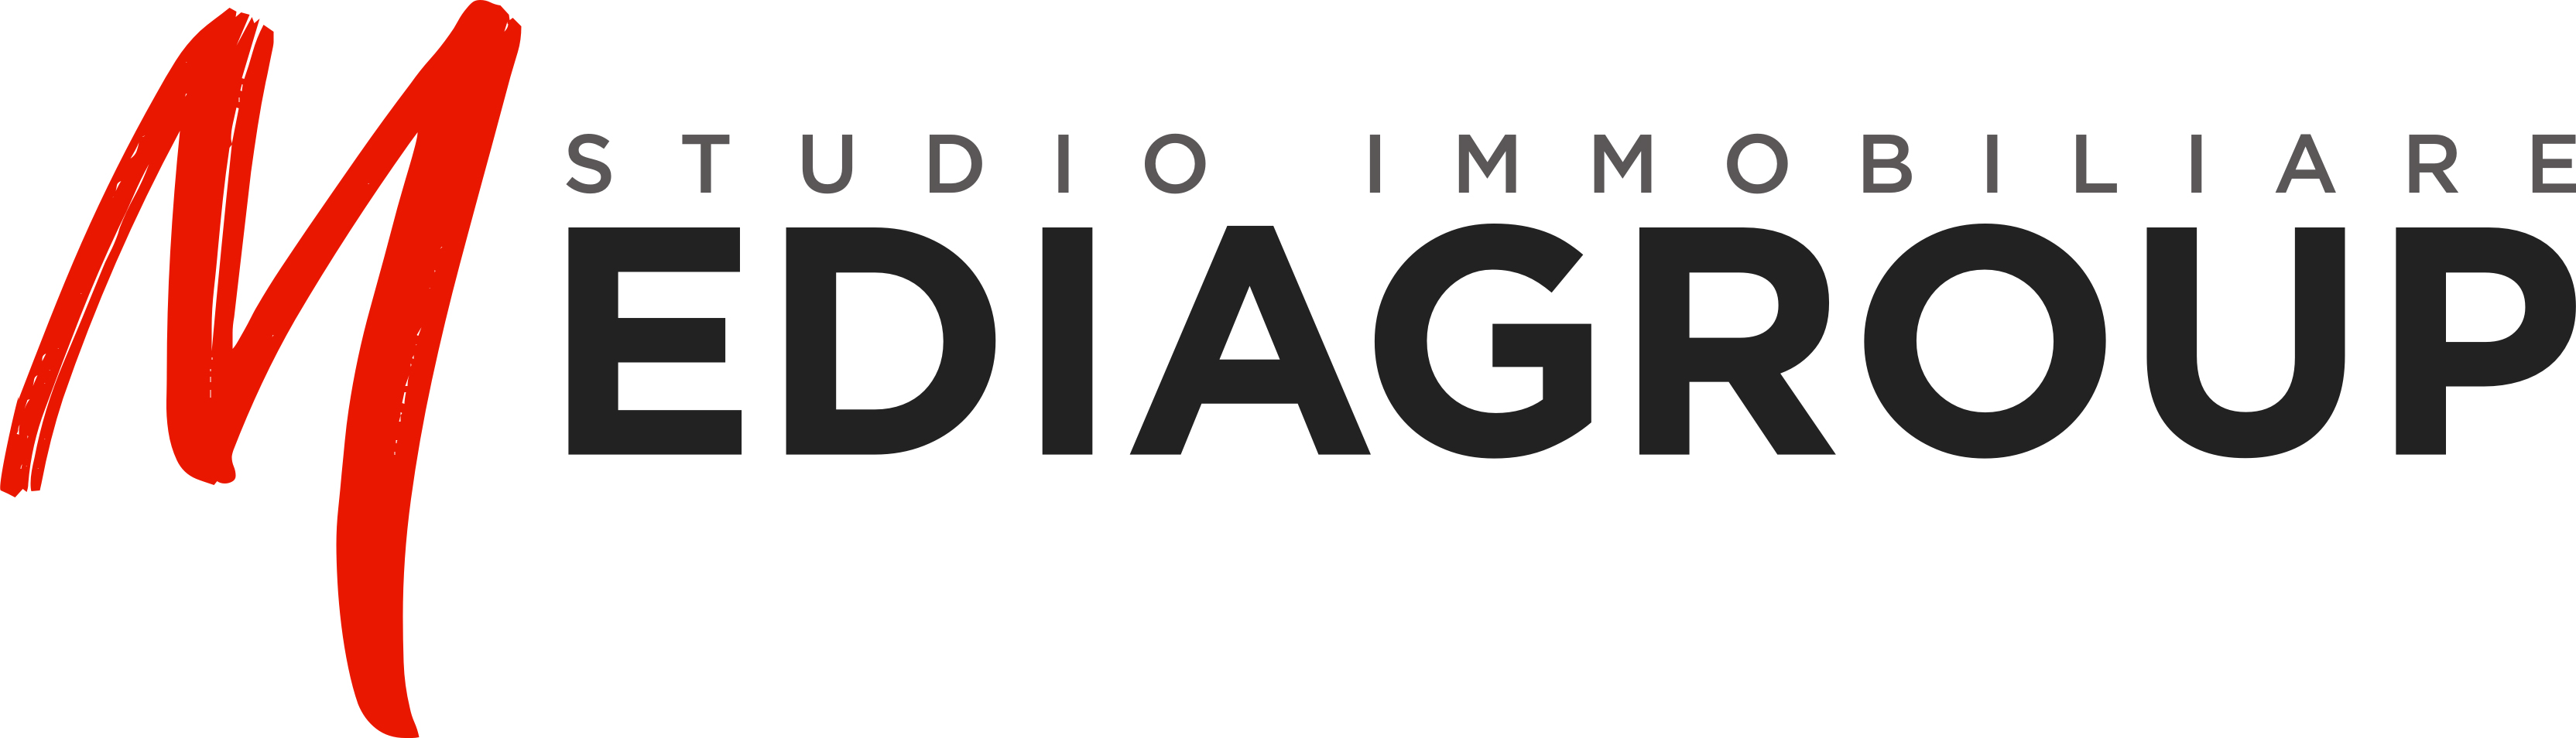 Logo Mediagroup Immobiliare